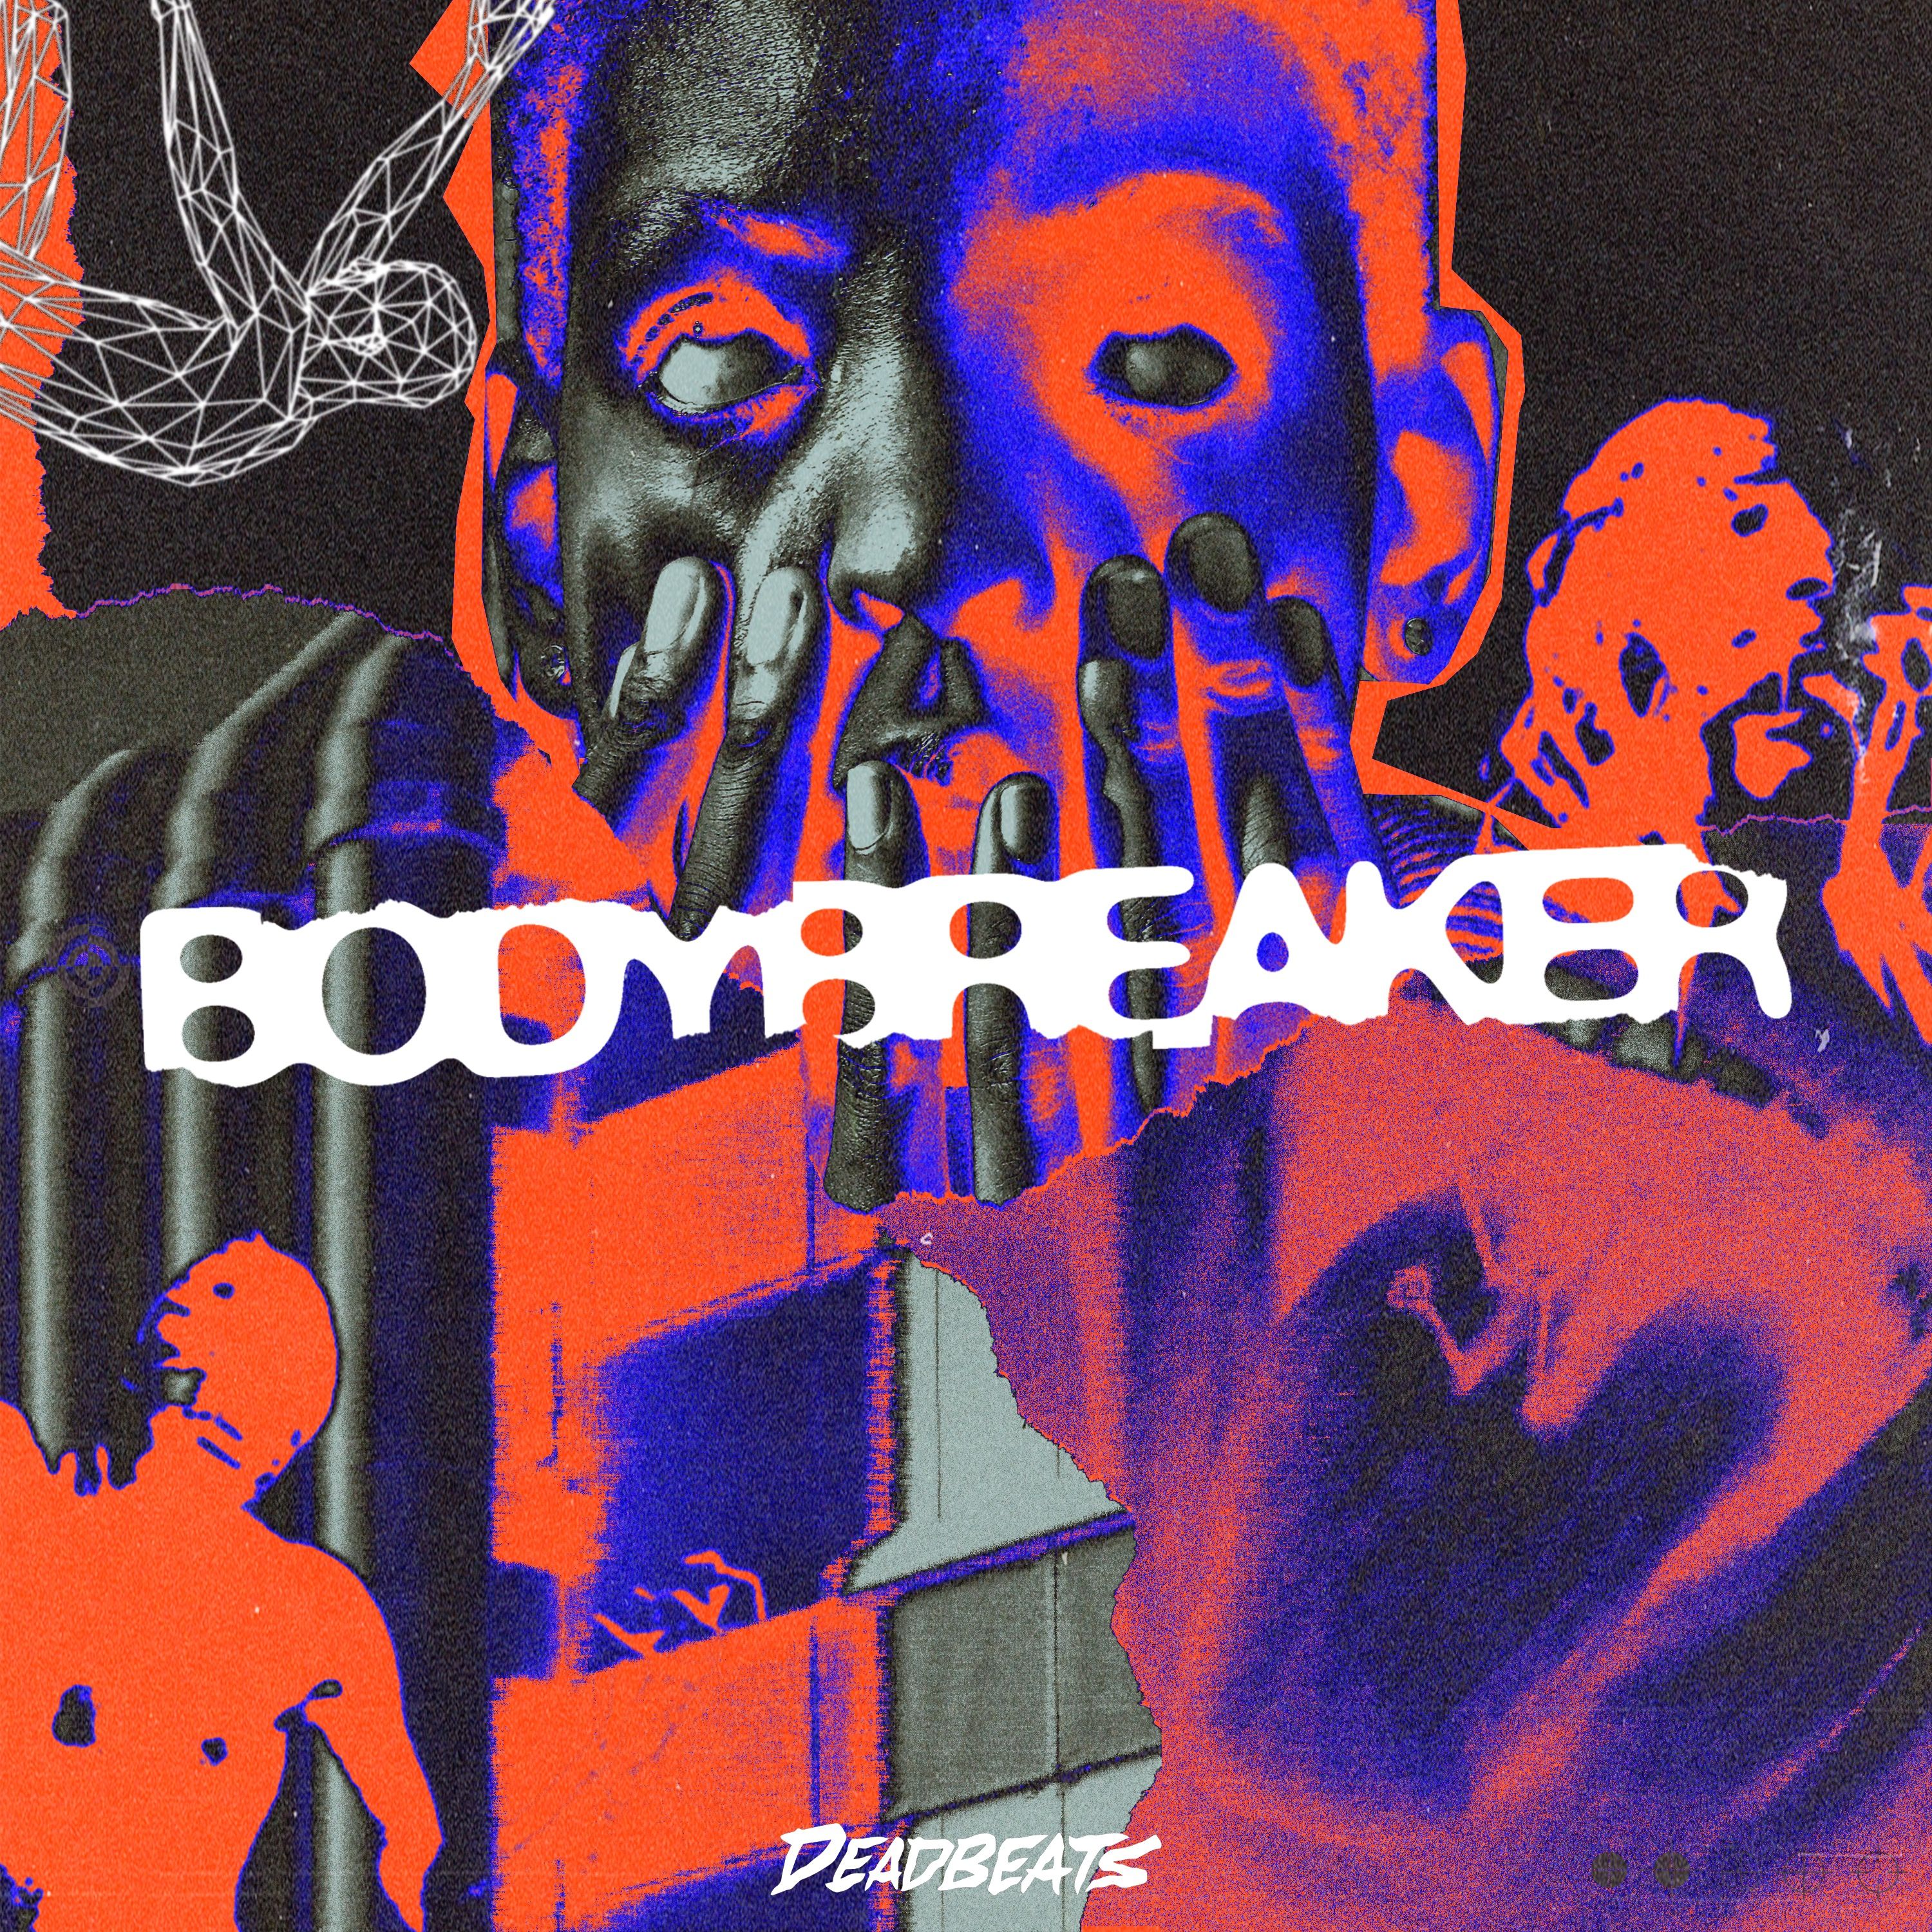 Download Body Breaker